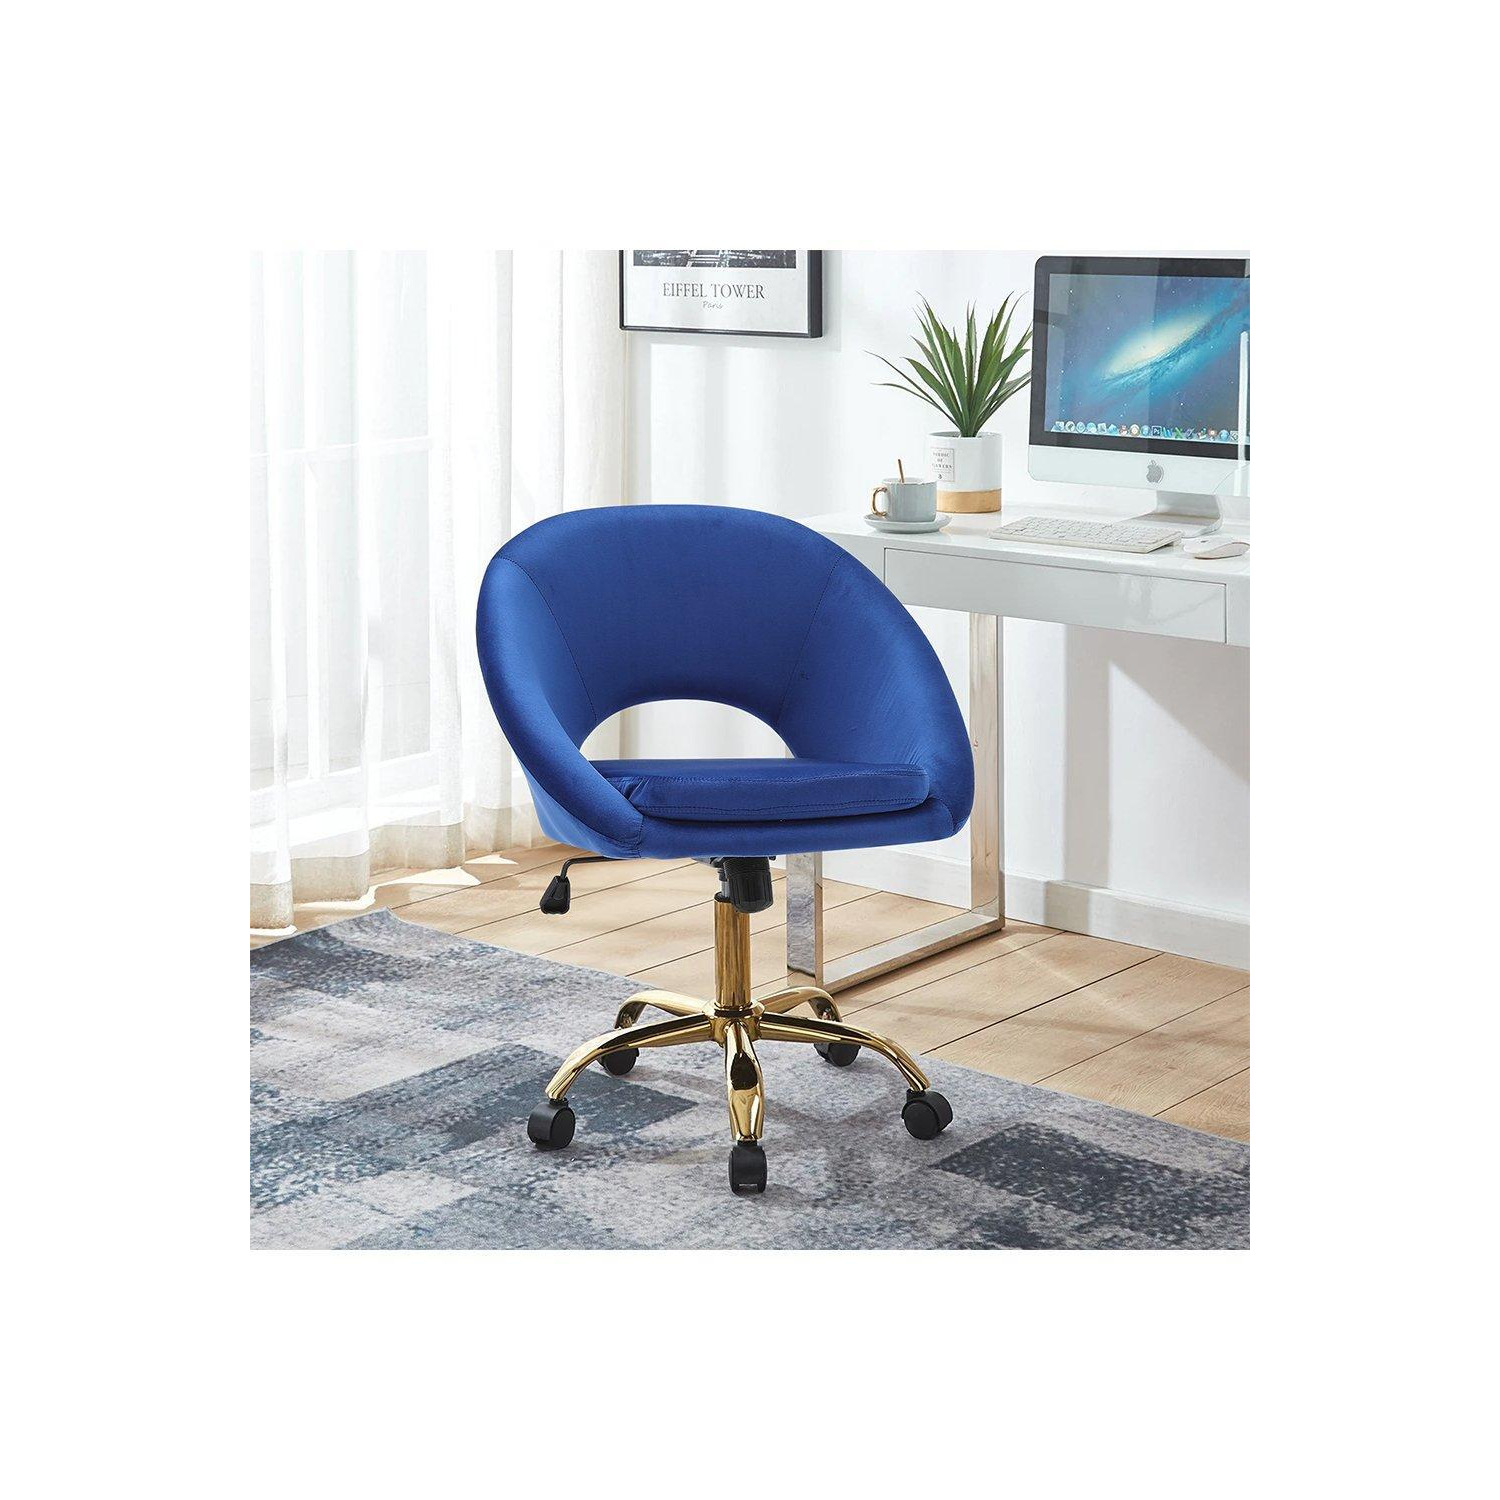 Blue Velvet Swivel Office Chair Height Adjustable for Home Office - image 1